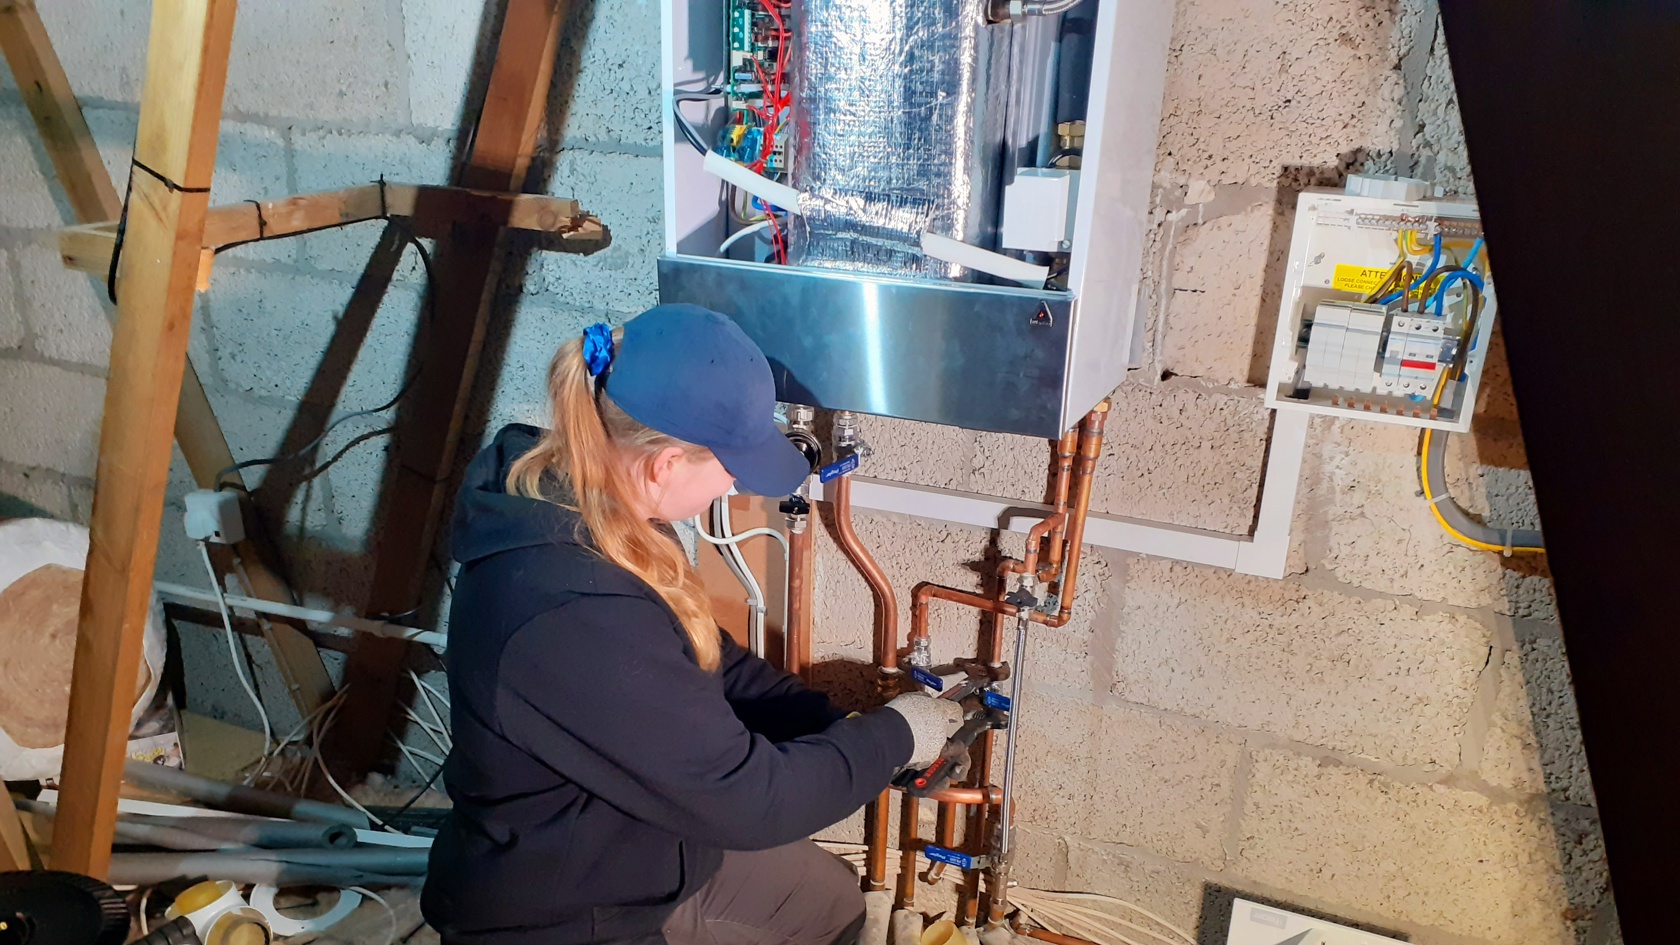 Taneisha De Gruchy installing a boiler